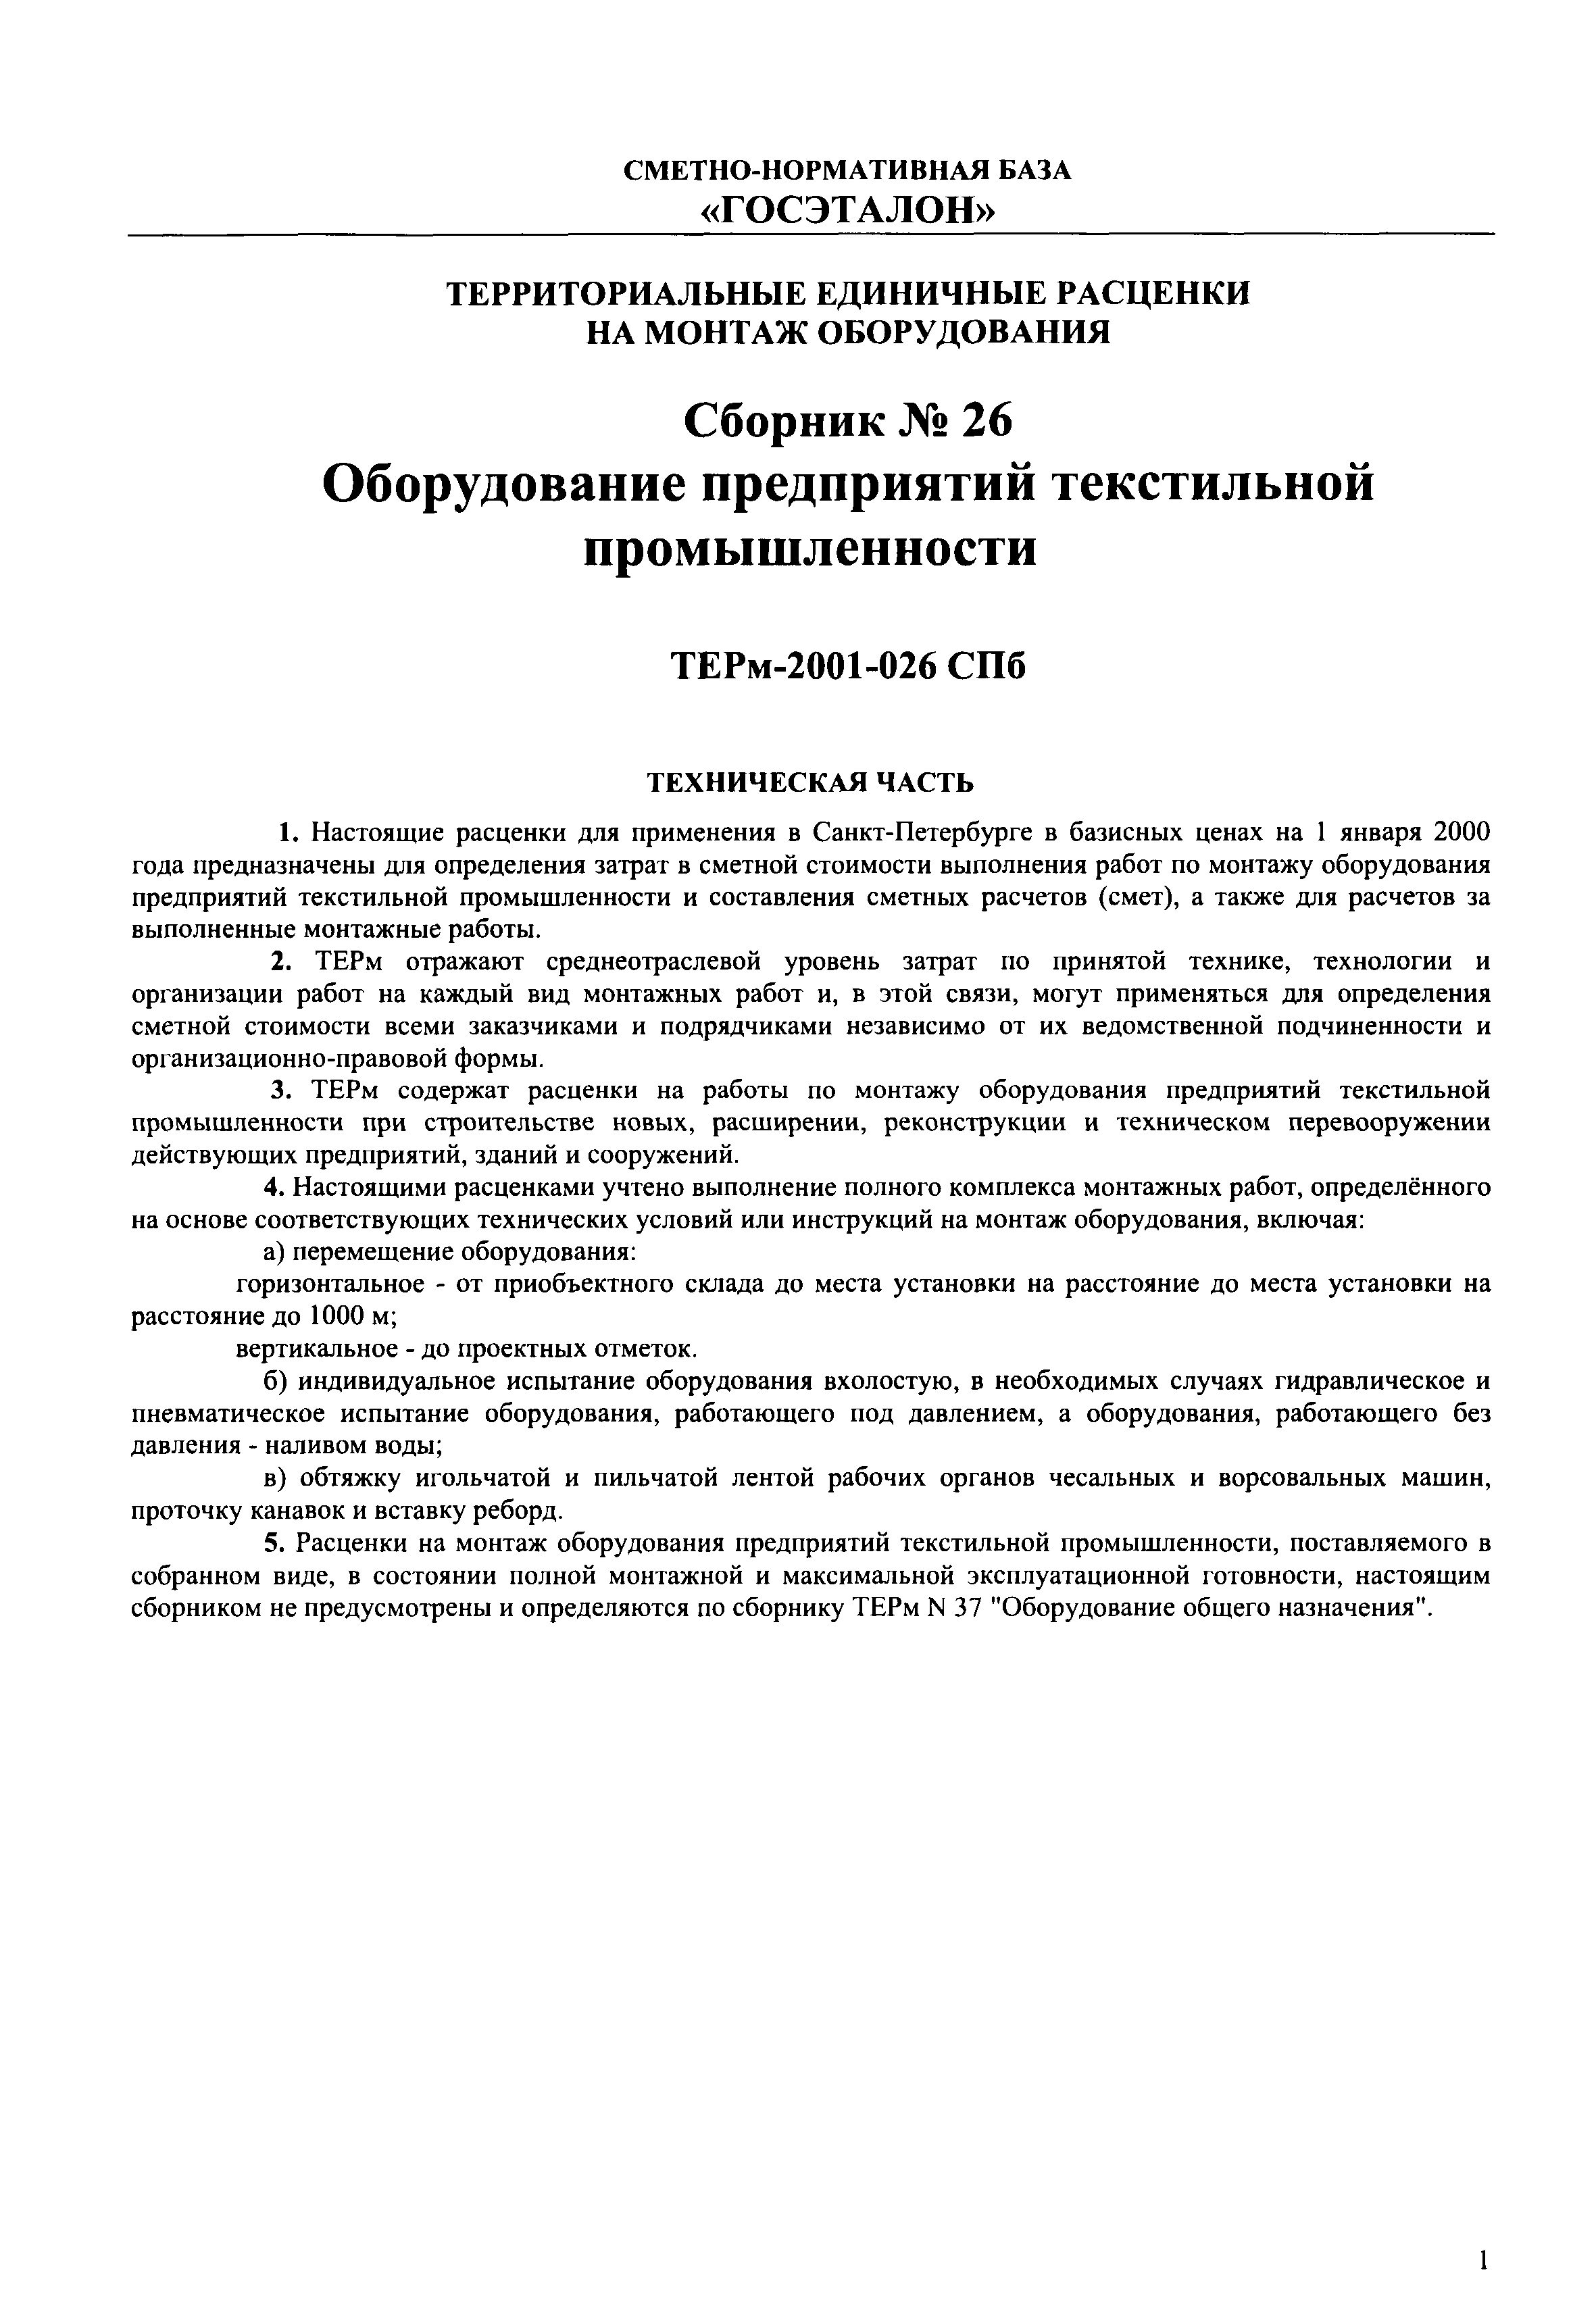 ТЕРм 2001-26 СПб